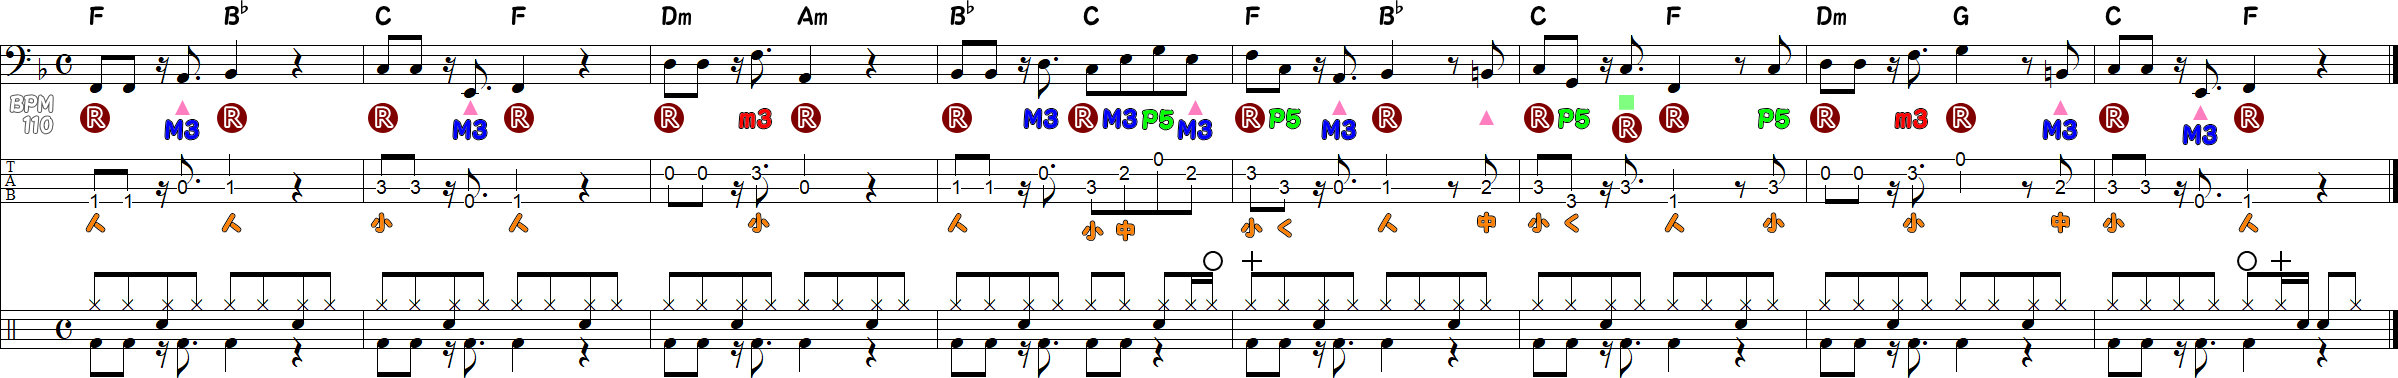 ベースラインとドラム譜の練習②の8小節